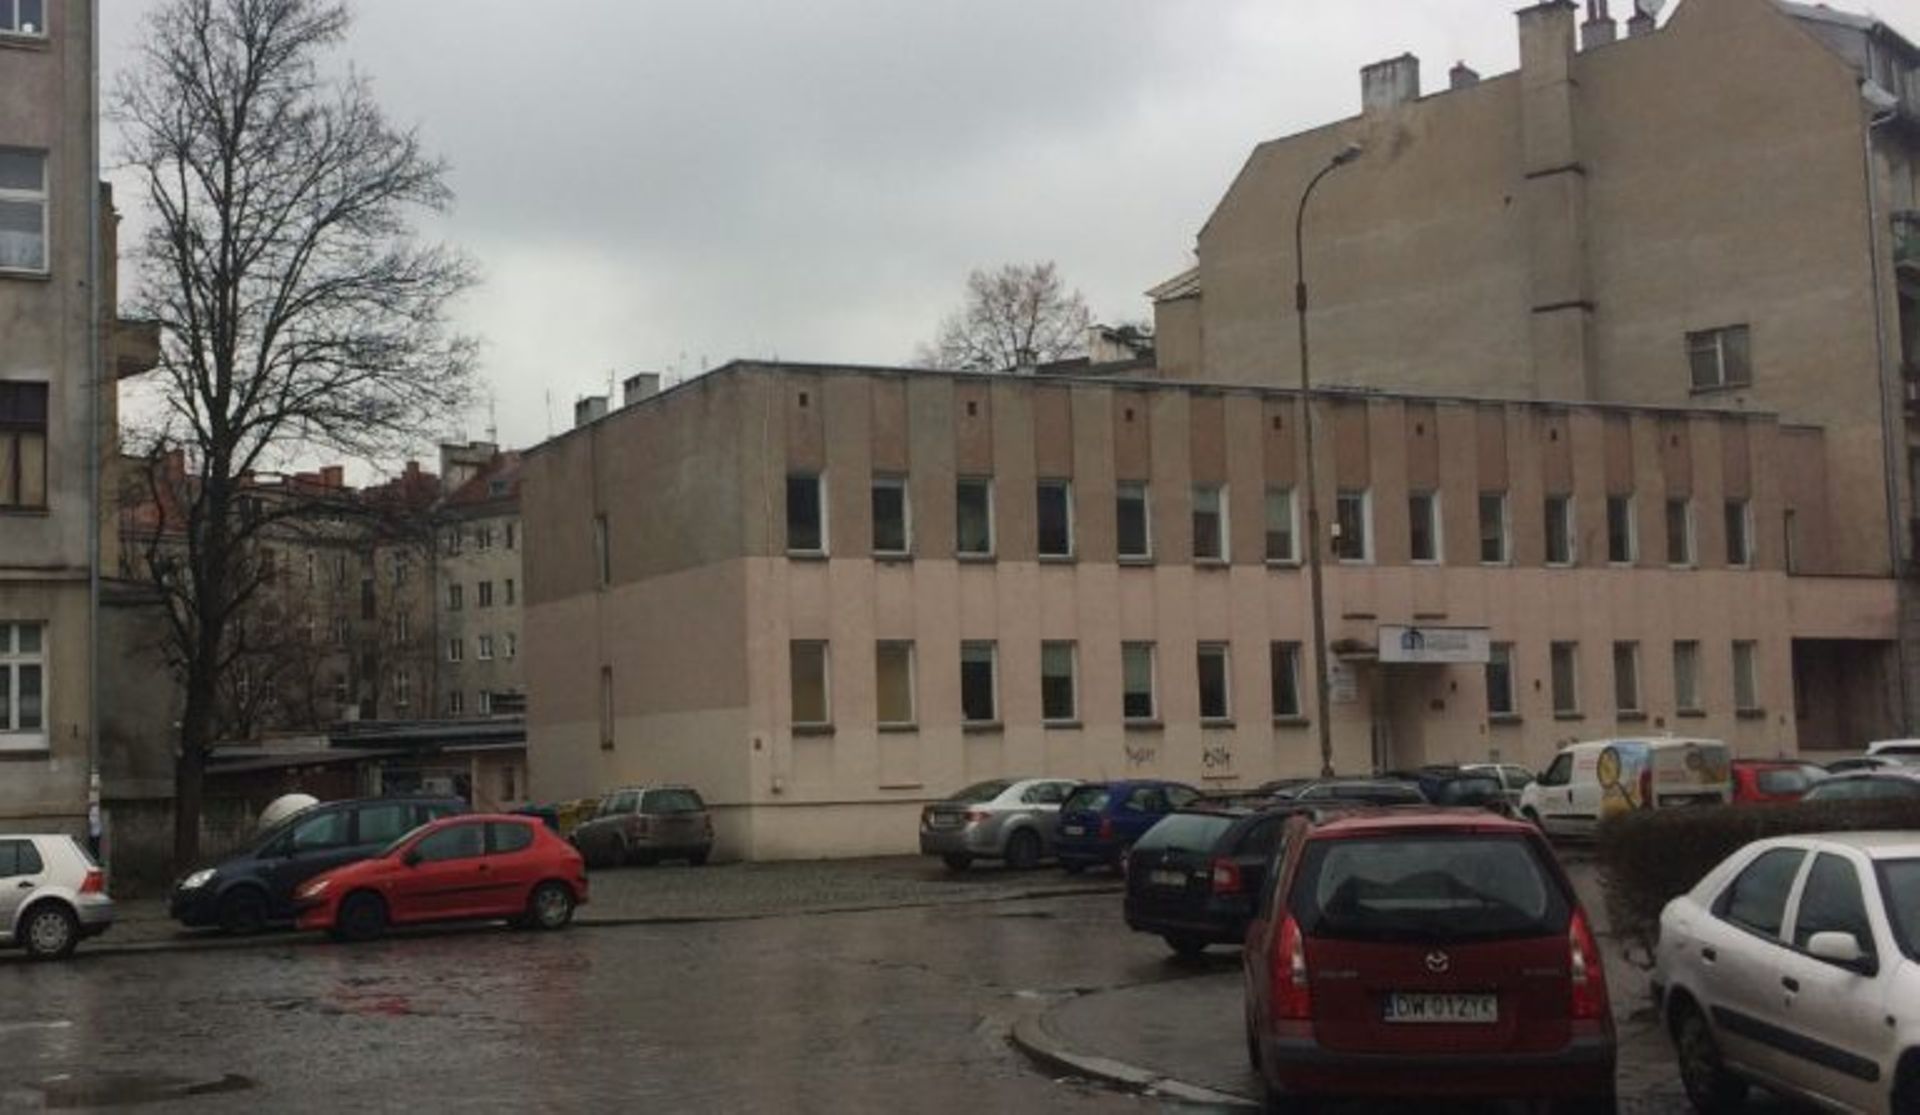 Wrocławskie Mieszkania sprzedają siedzibę. Wśród chętnych ogólnopolscy deweloperzy